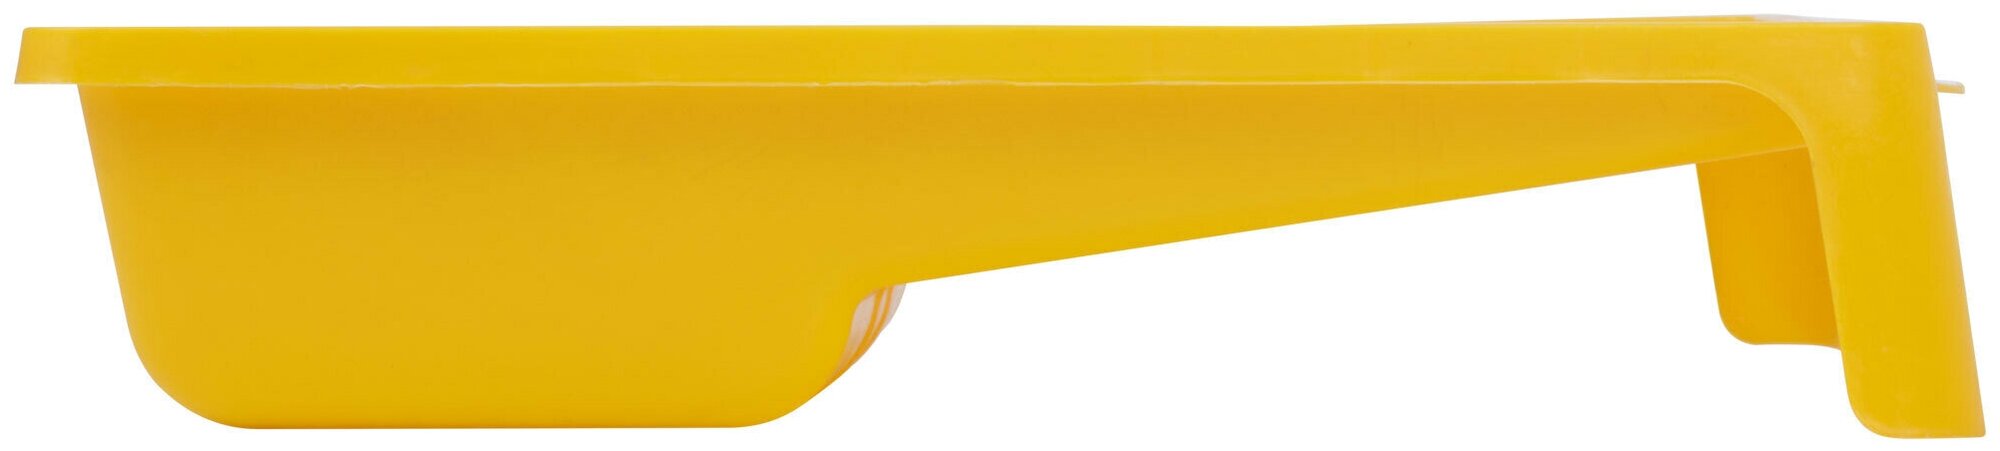 03993 Ванночка для краски 290х270 мм (желтая) FIT - фото №2